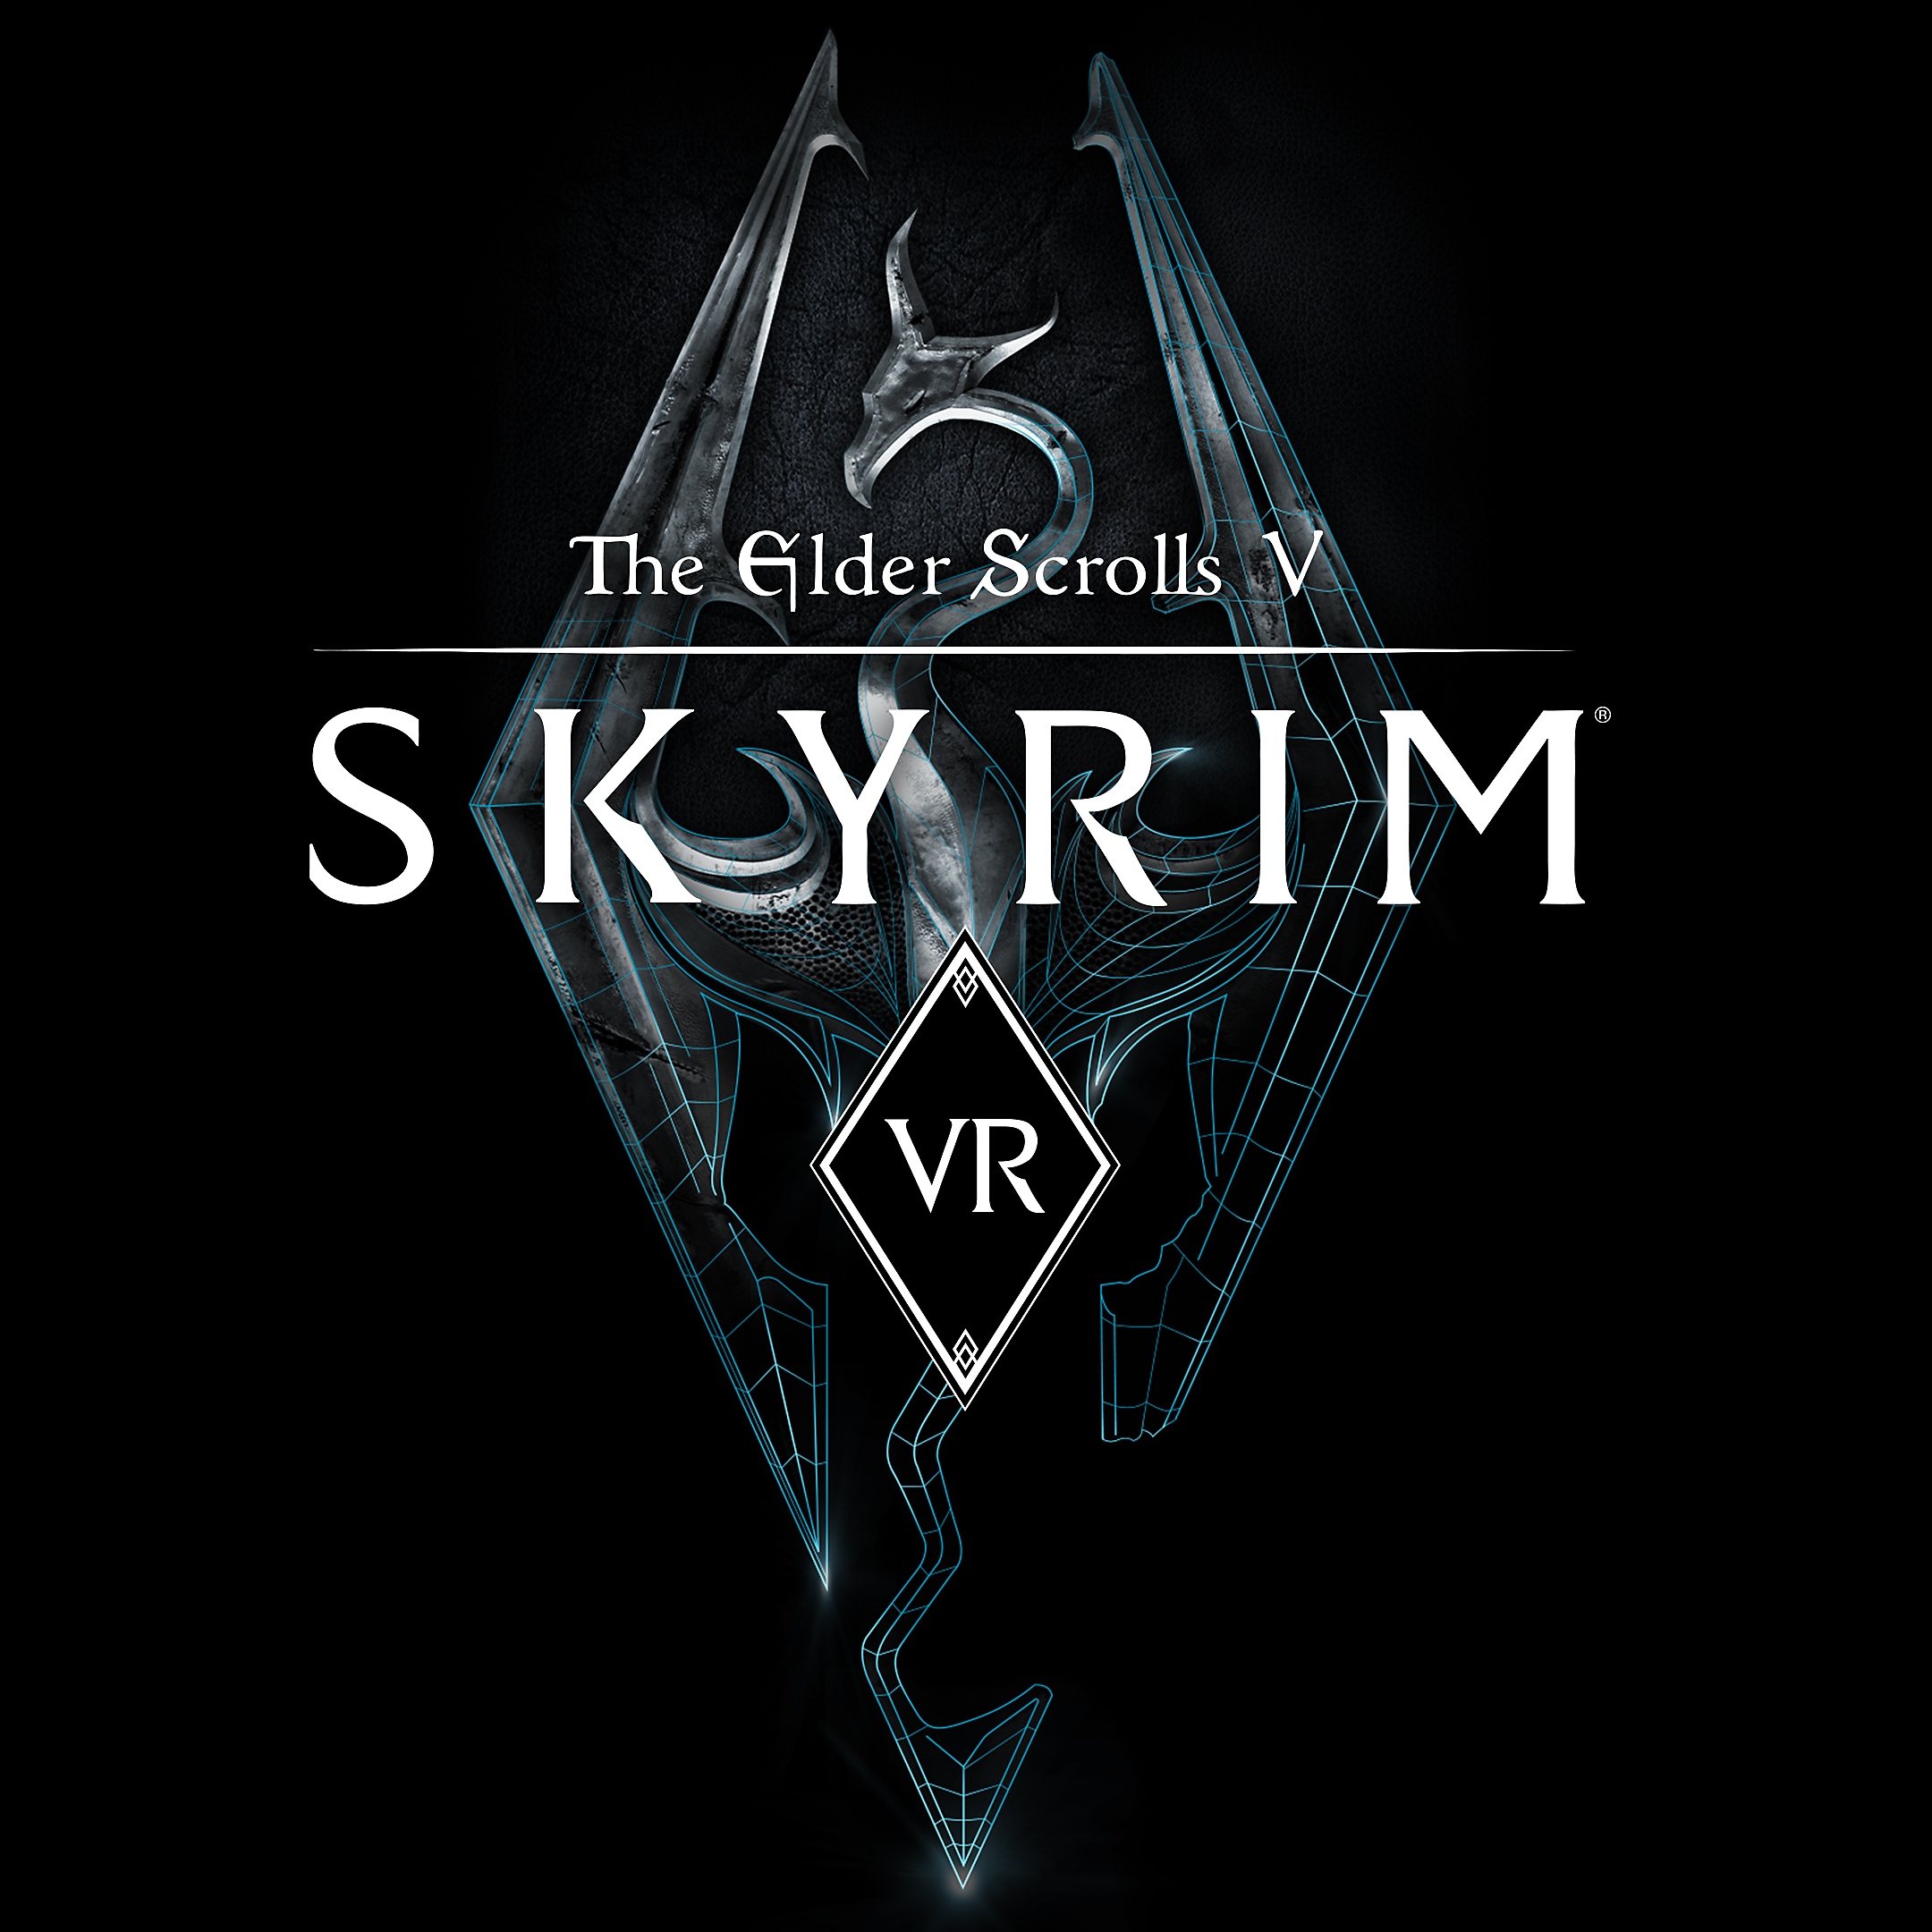 The Elder Scrolls V:Skyrim VR packshot